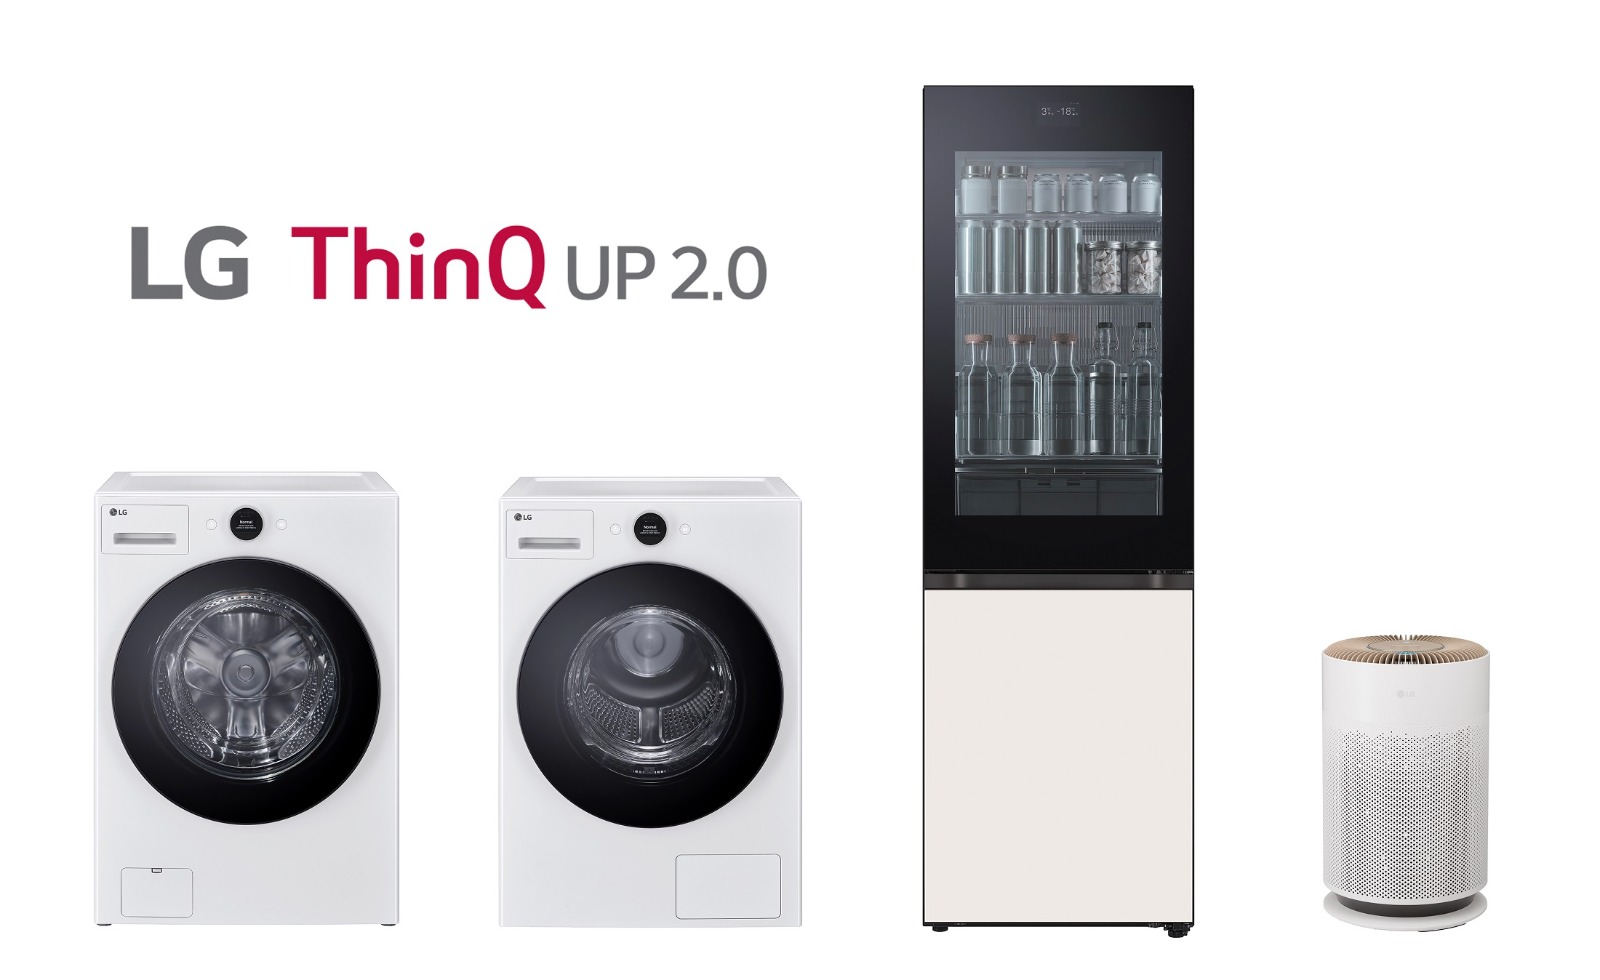 LG Hadirkan LG ThinQ UP 2.0, Inovasi Smart Home Untuk Dukung Aktifitas Rumah Tangga